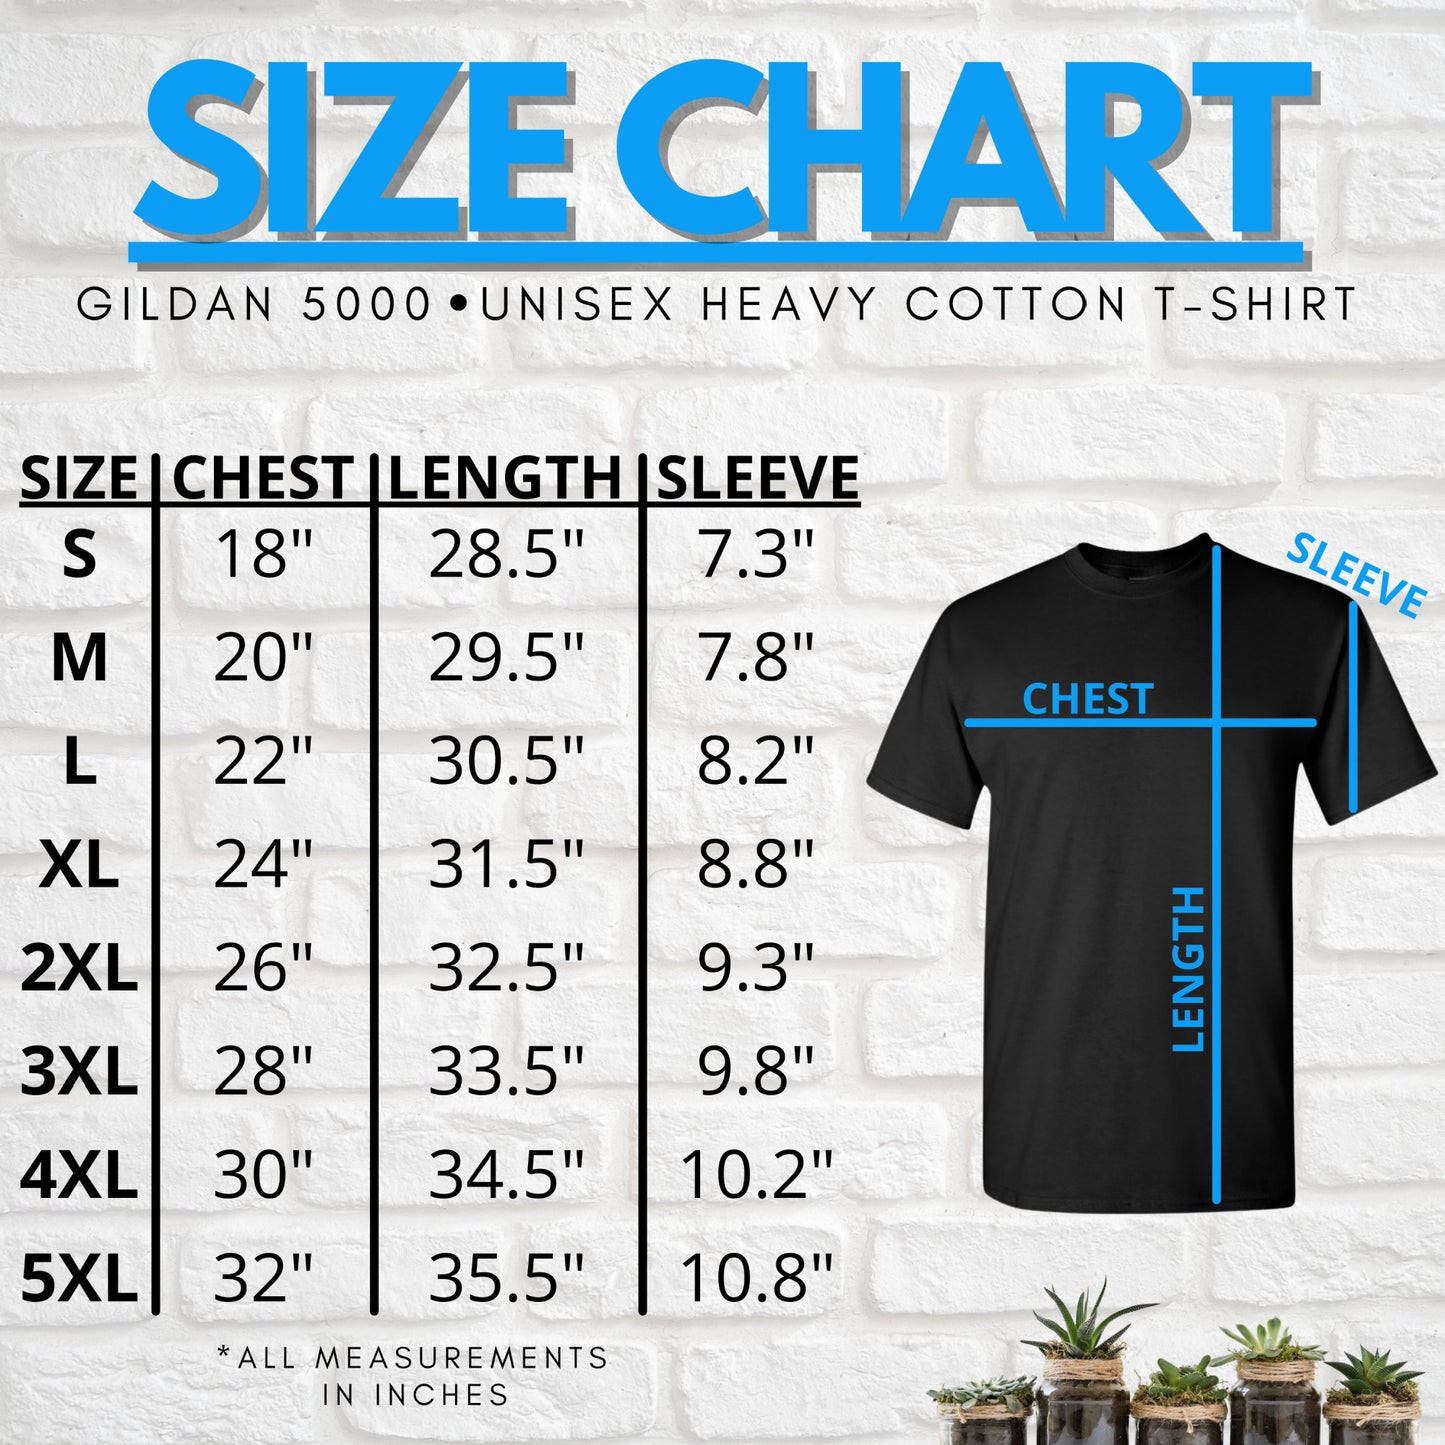 Size chart for this Gildan shirt